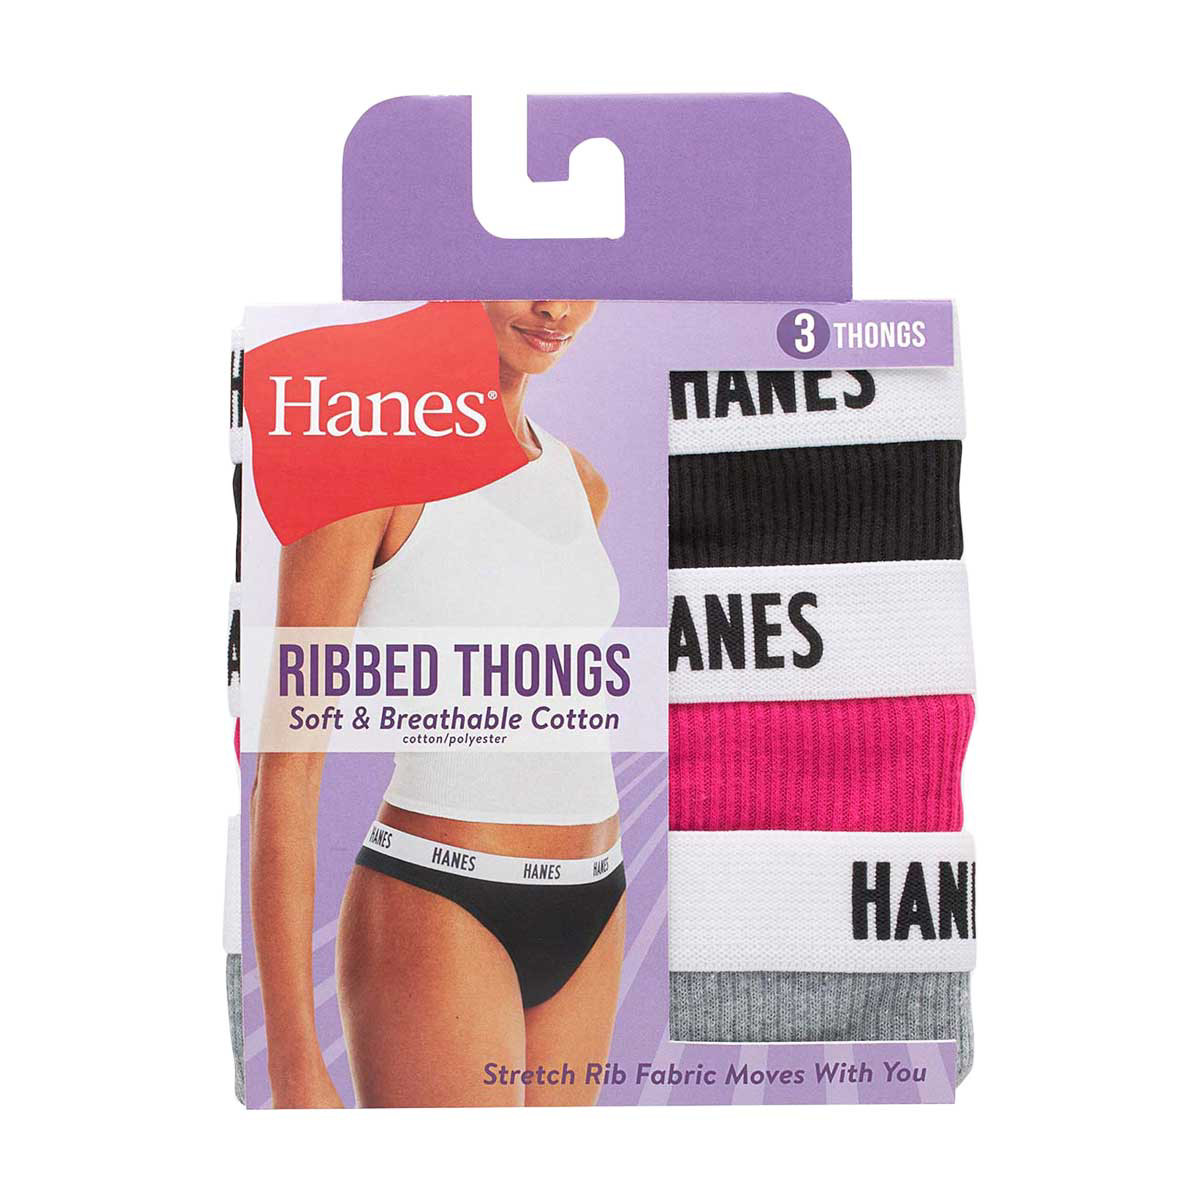 Hanes Originals Women's Thong Underwear, Breathable Cotton Stretch